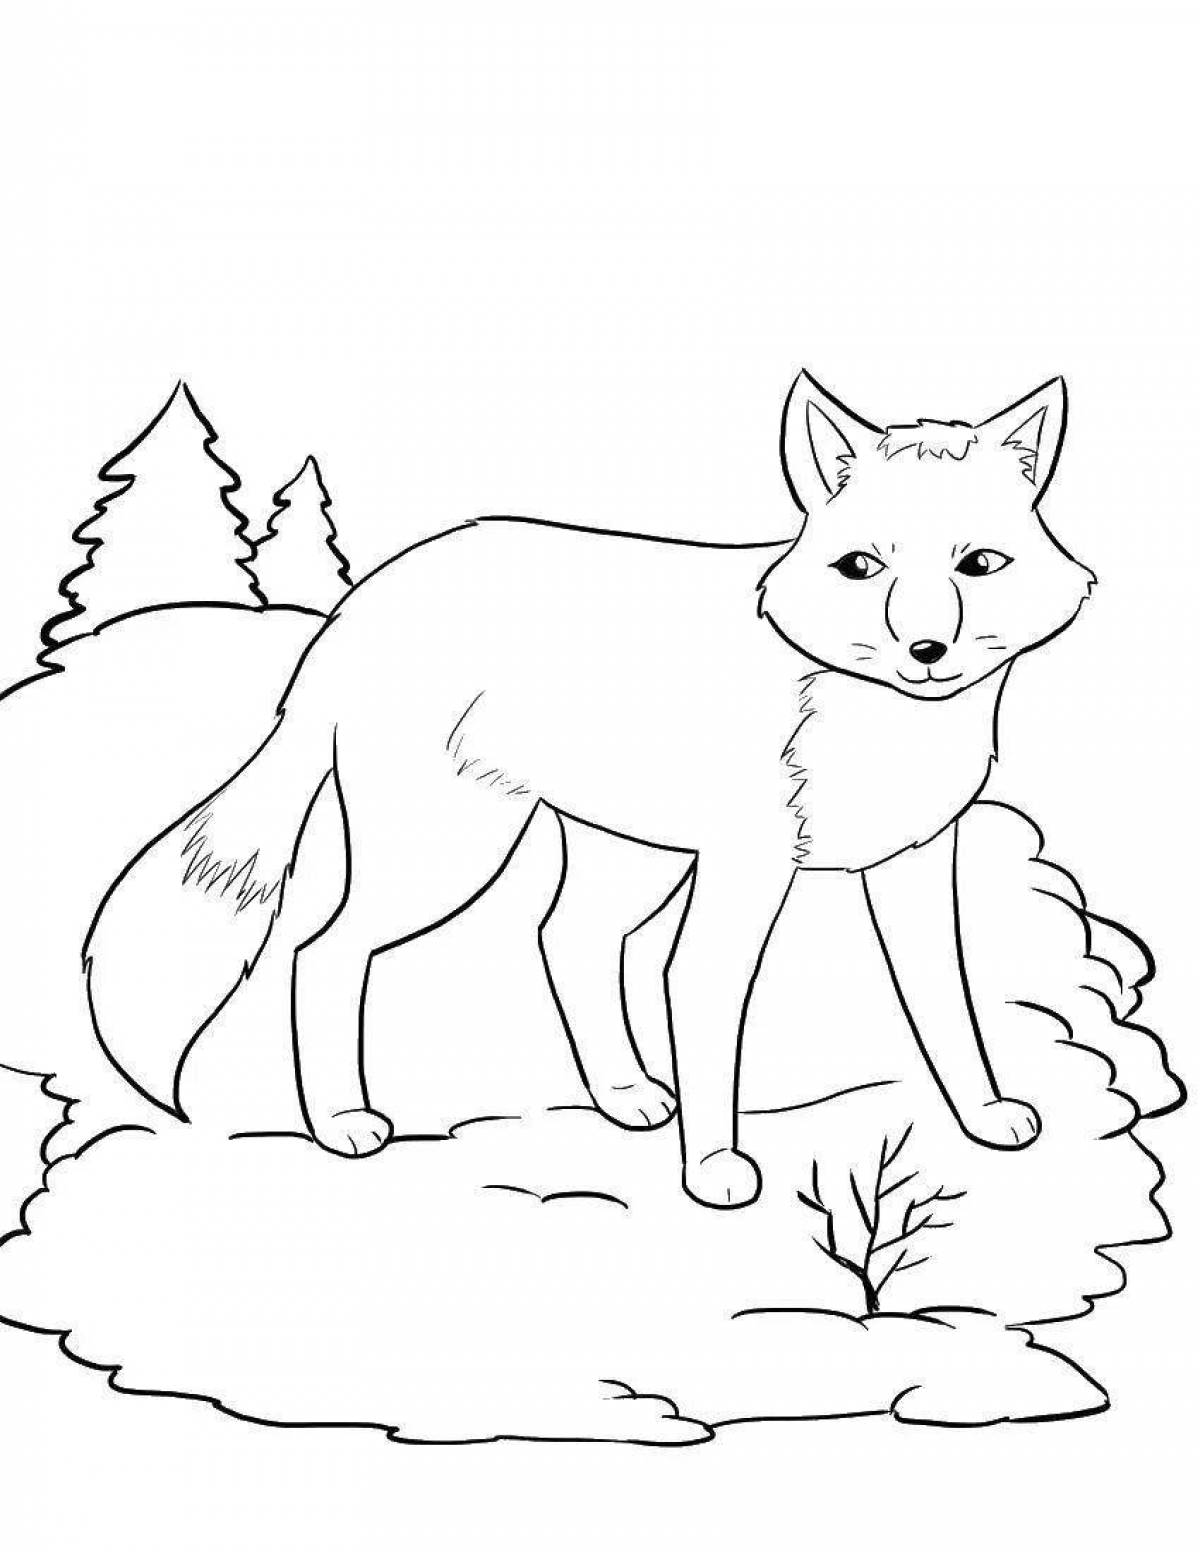 Fun coloring fox